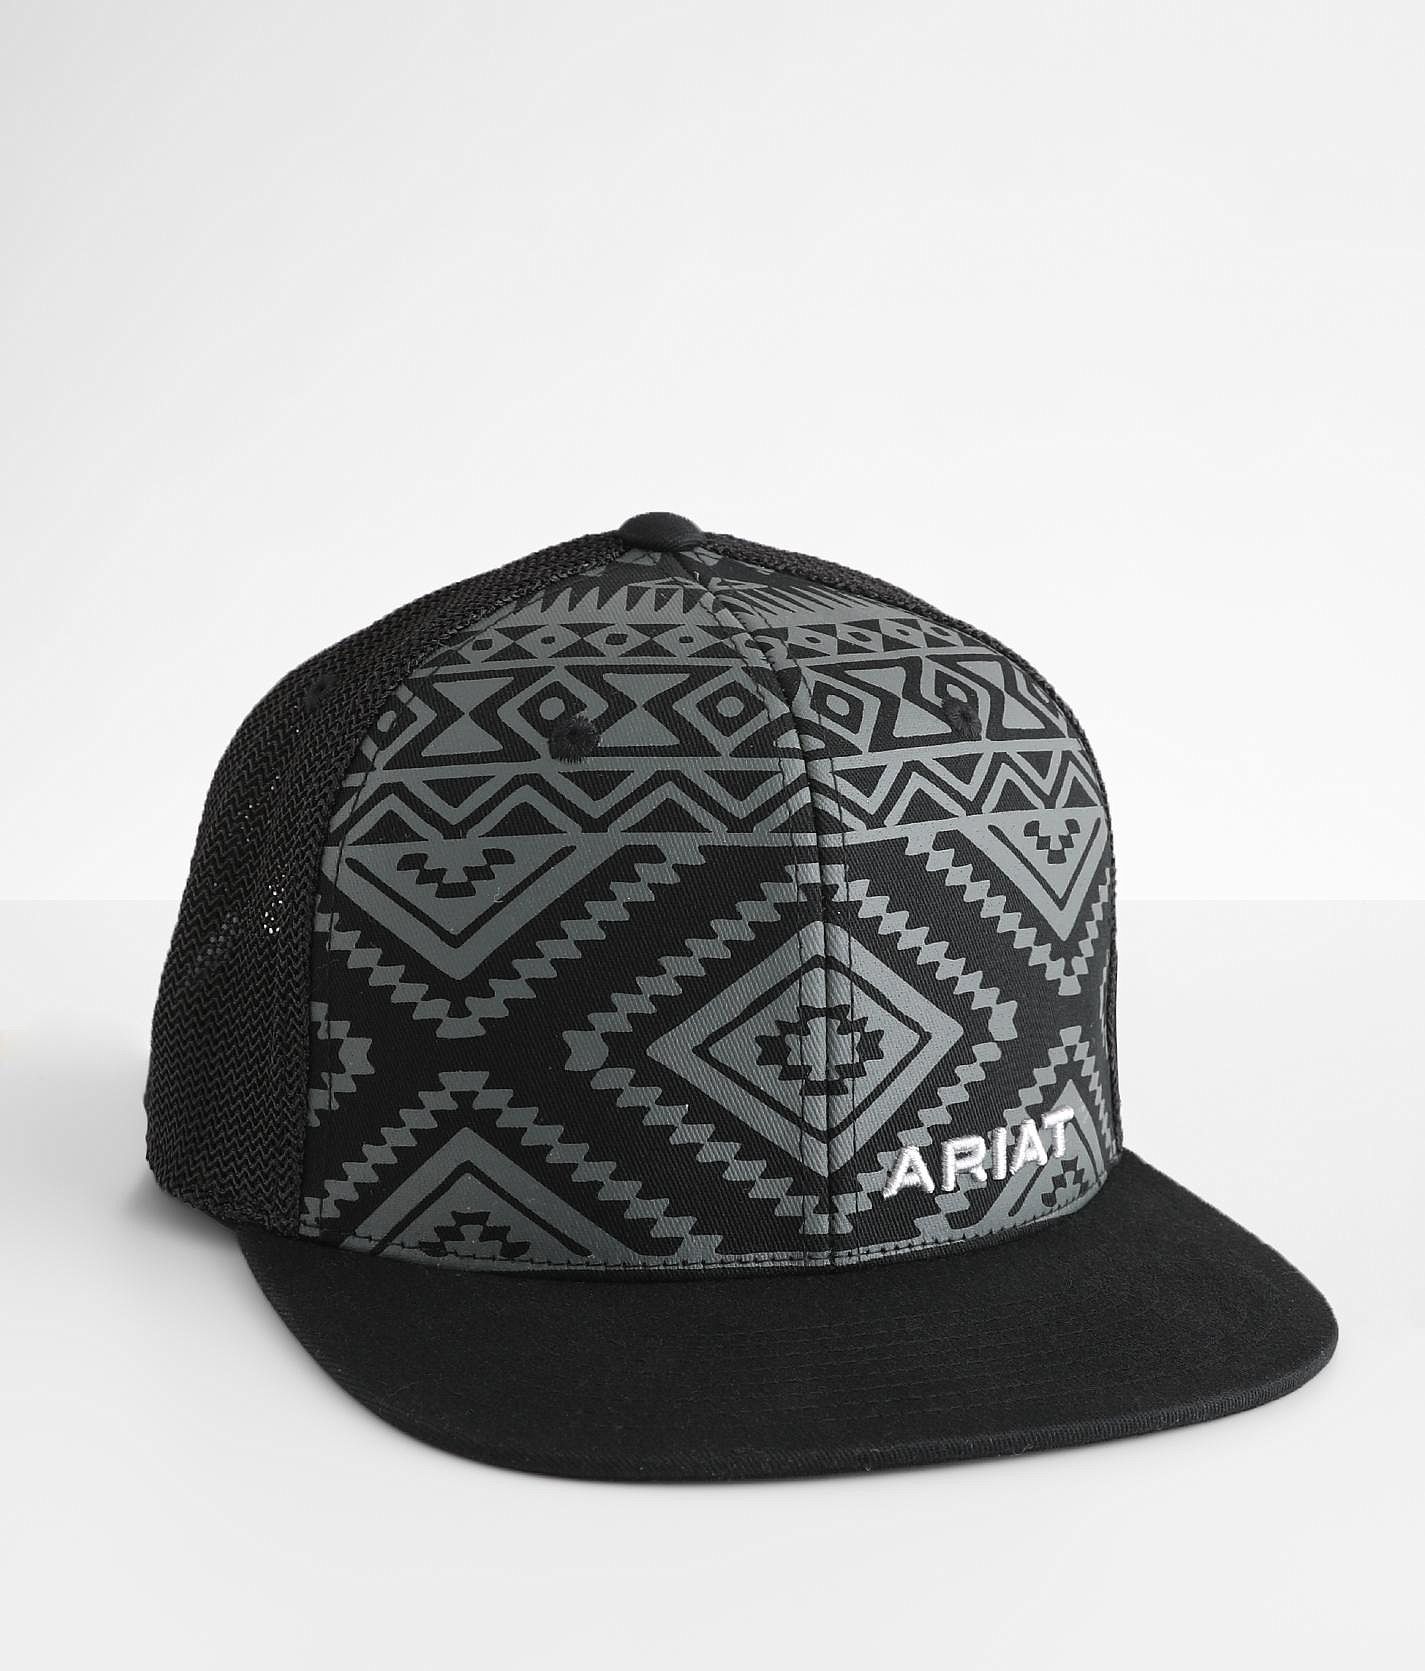 Ariat Aztec 110 Flexfit Trucker Hat - Men's Hats in Grey